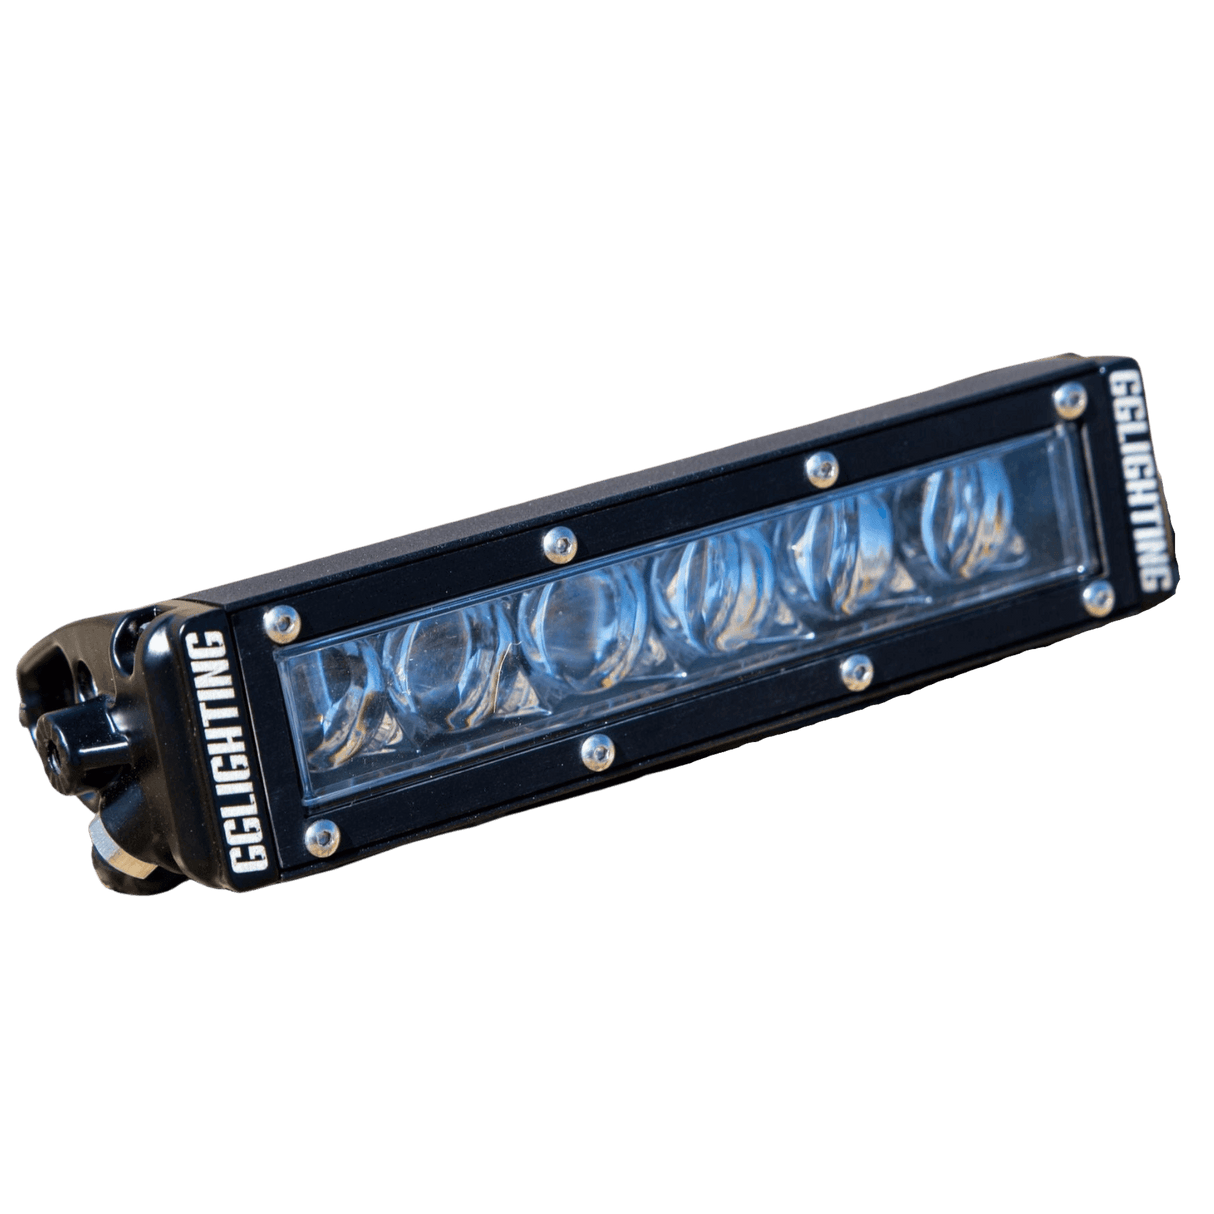 6" Race Series Single Row LED Light Bar - R1 Industries